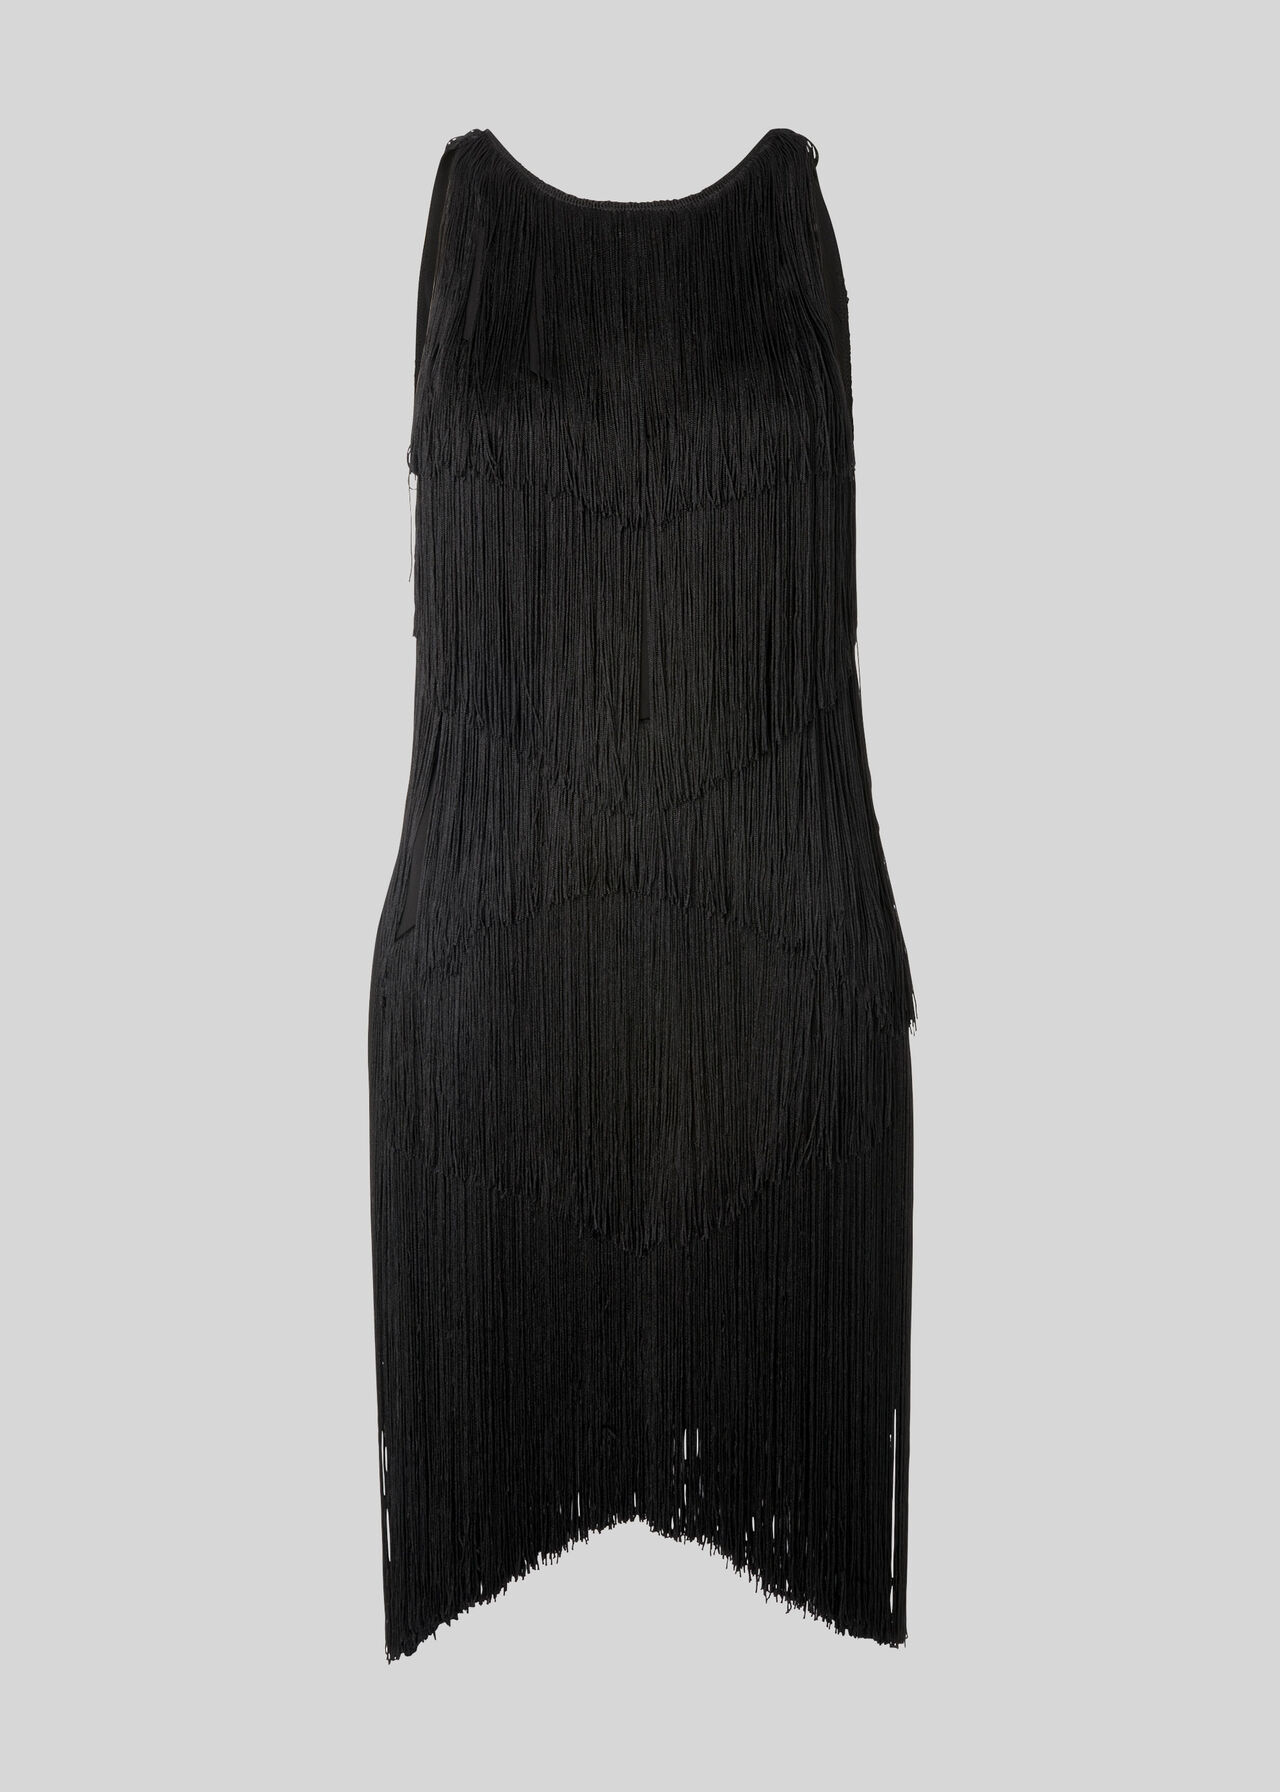 Evena Fringe Detail Dress Black